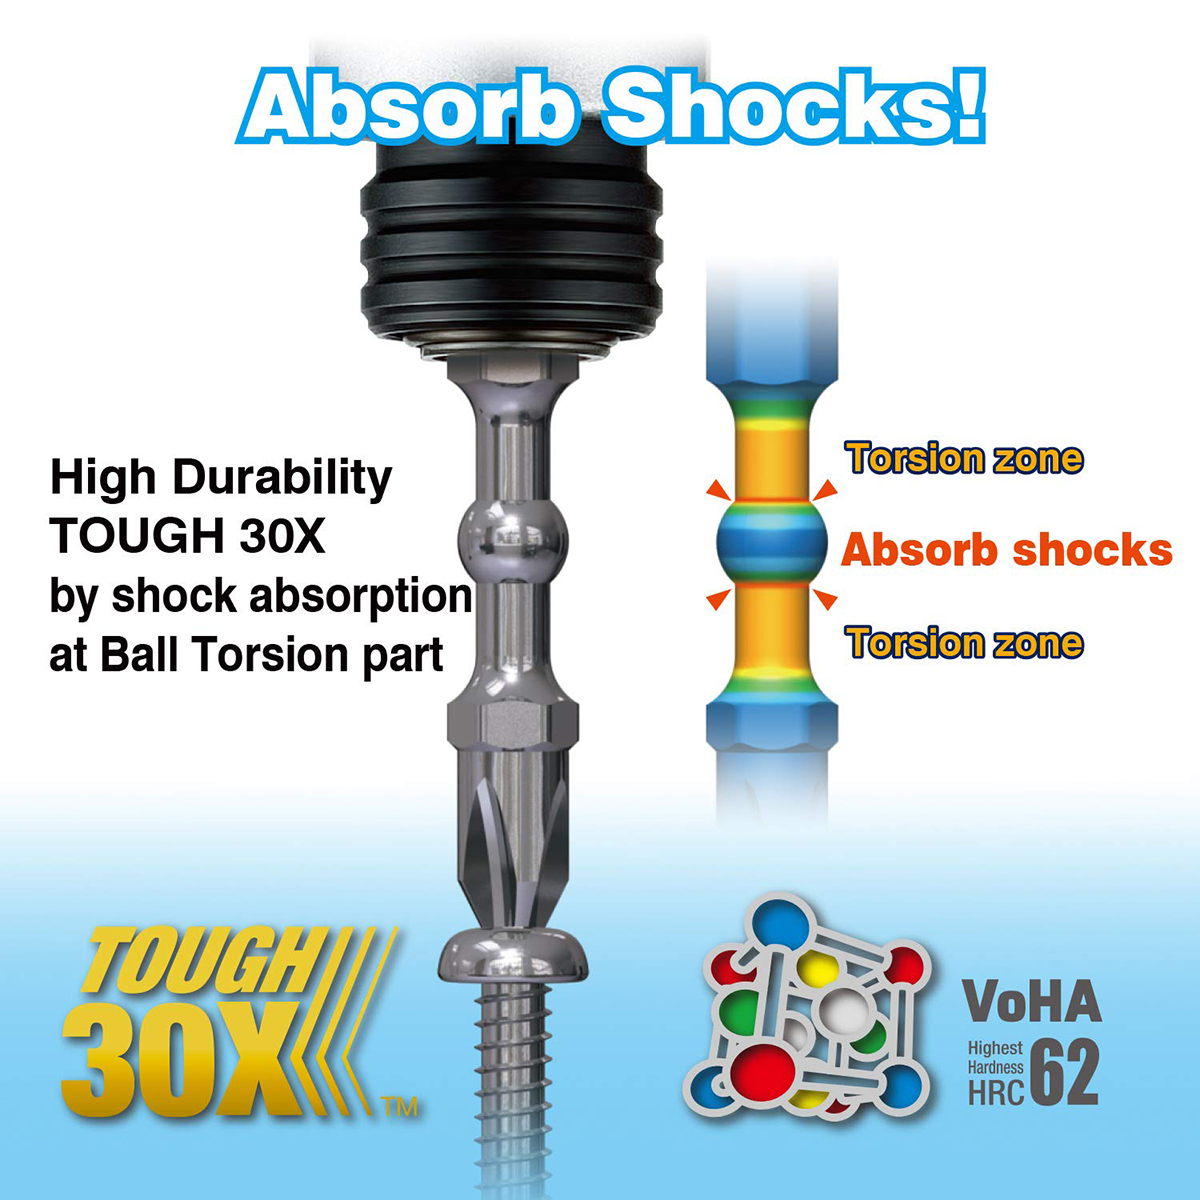 Absorb shocks